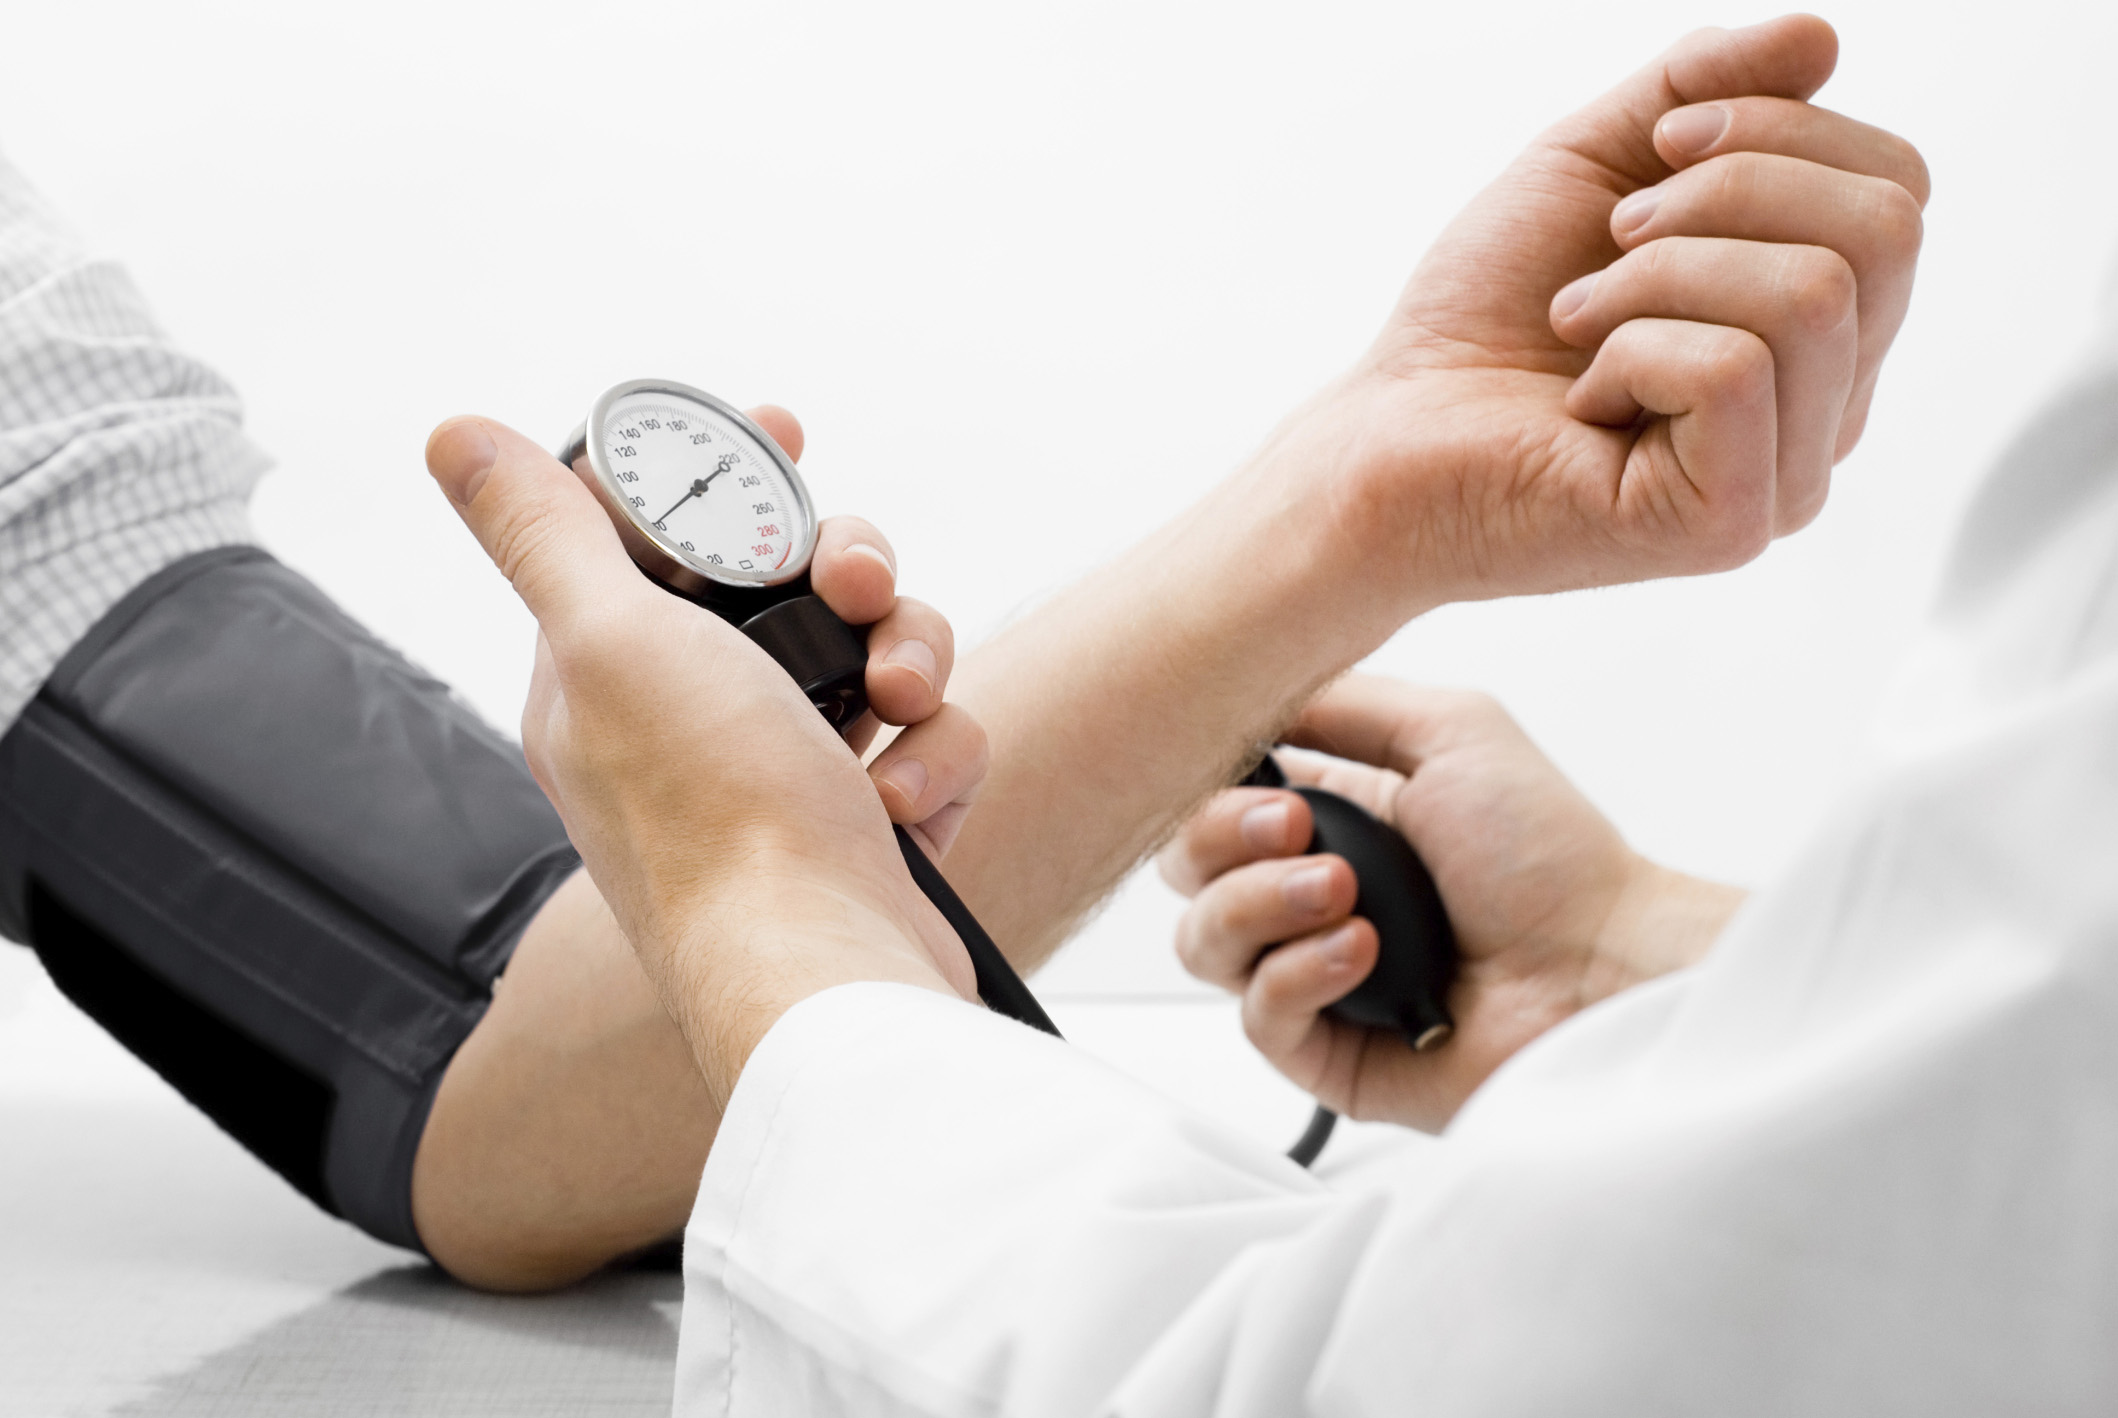 visok krvni pritisak lijek 1- stupanj liječenje hipertenzije